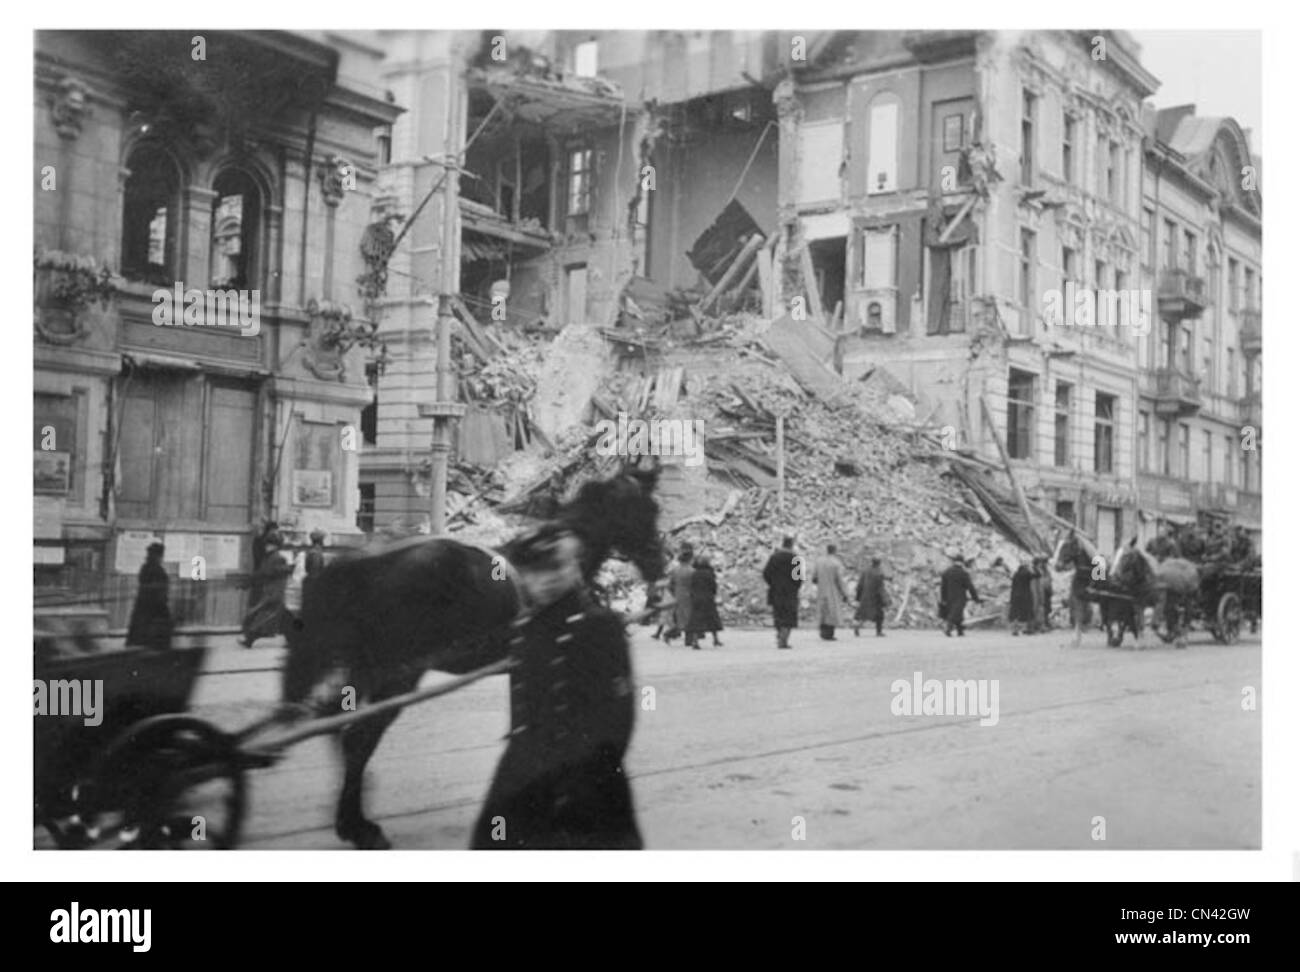 Warschau Polen während des zweiten Weltkrieges Stockfoto